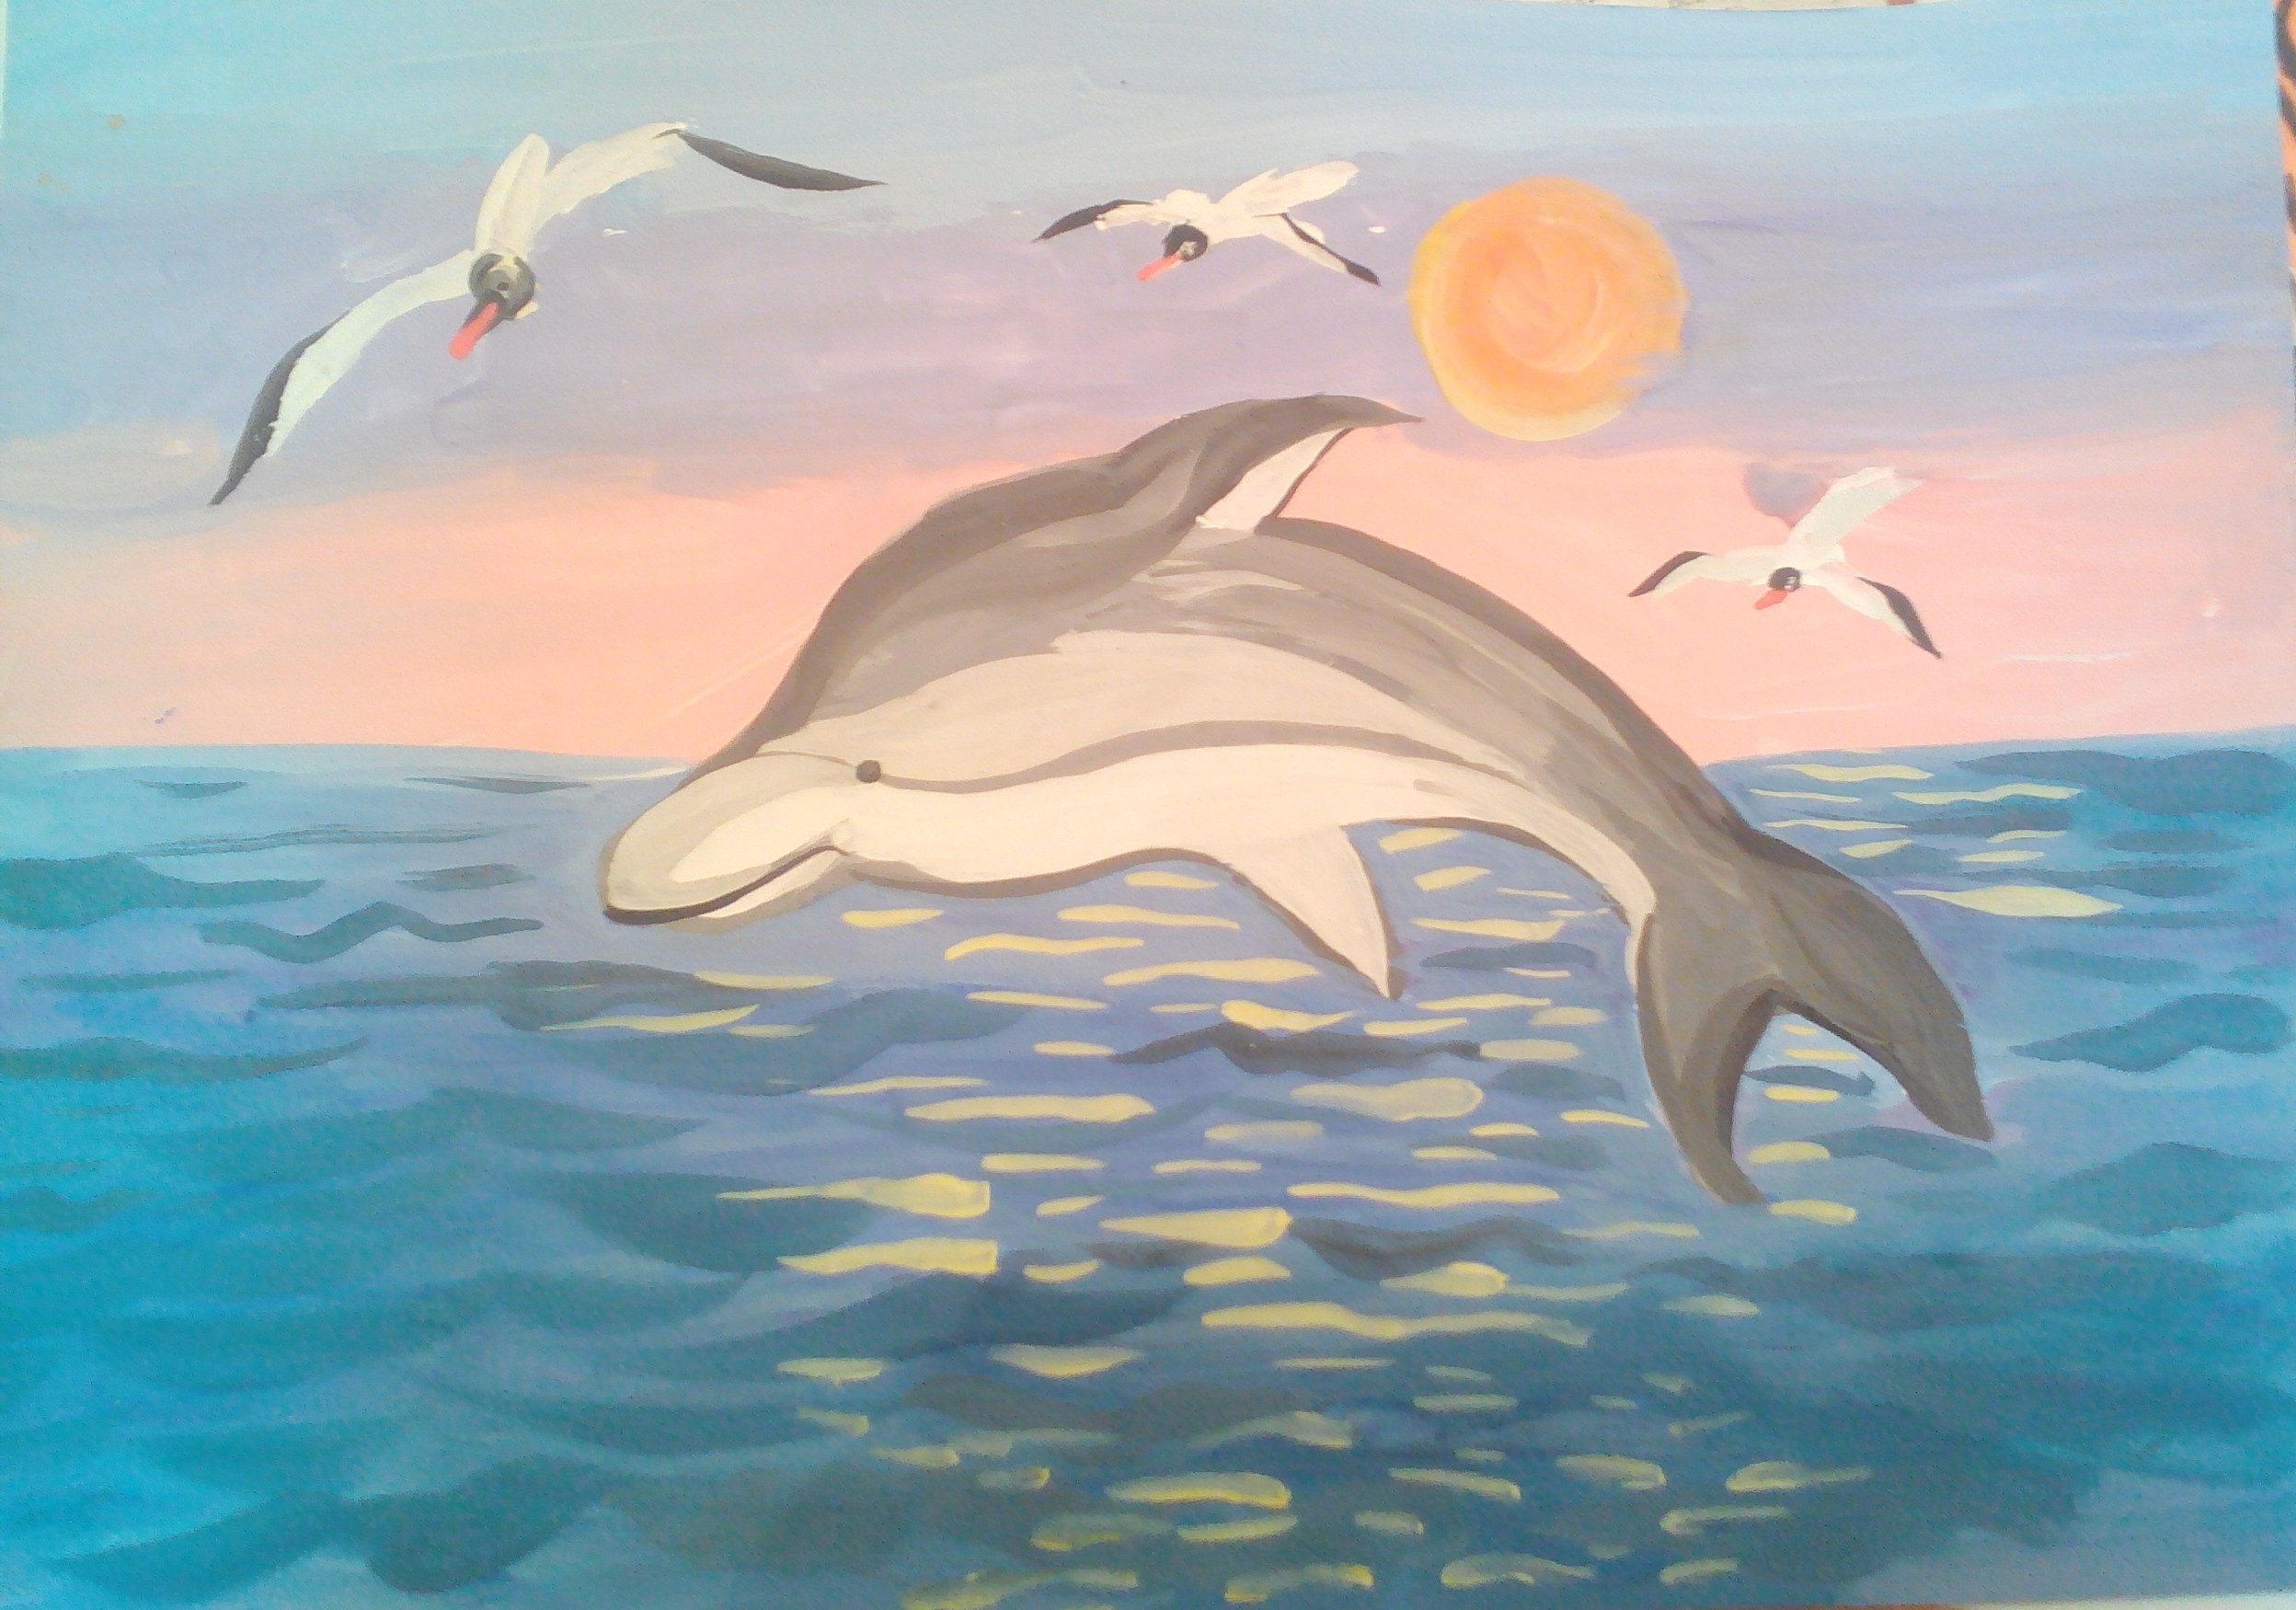 Дельфин 2 группа